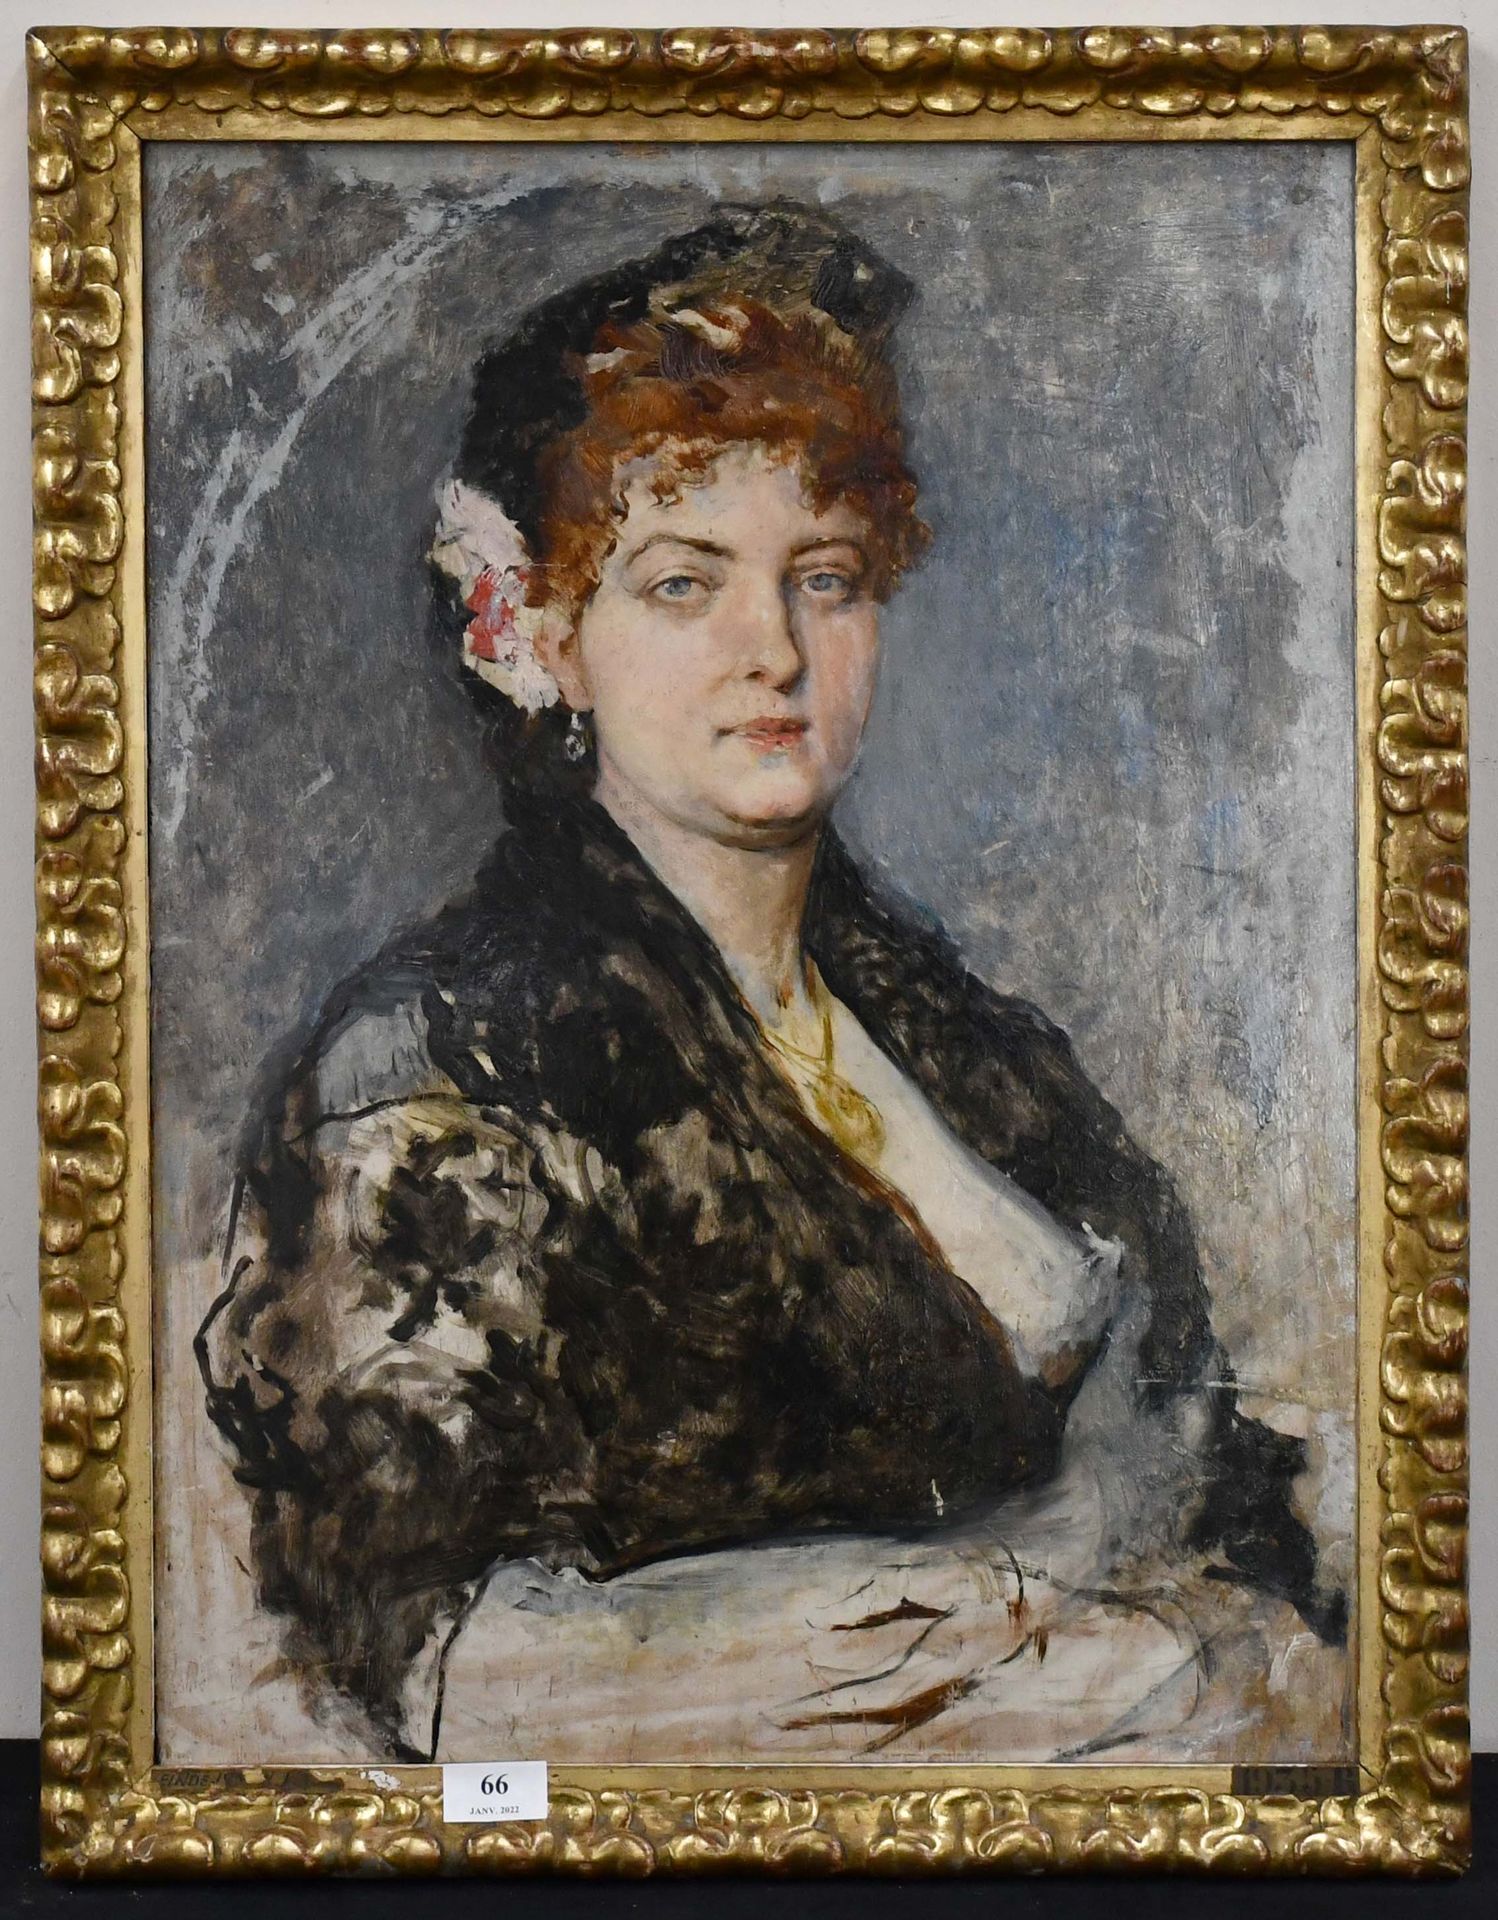 Null 归属于阿德里安-杜帕涅的作品

油画："优雅女士的肖像"。无符号。

尺寸：60厘米×44厘米。